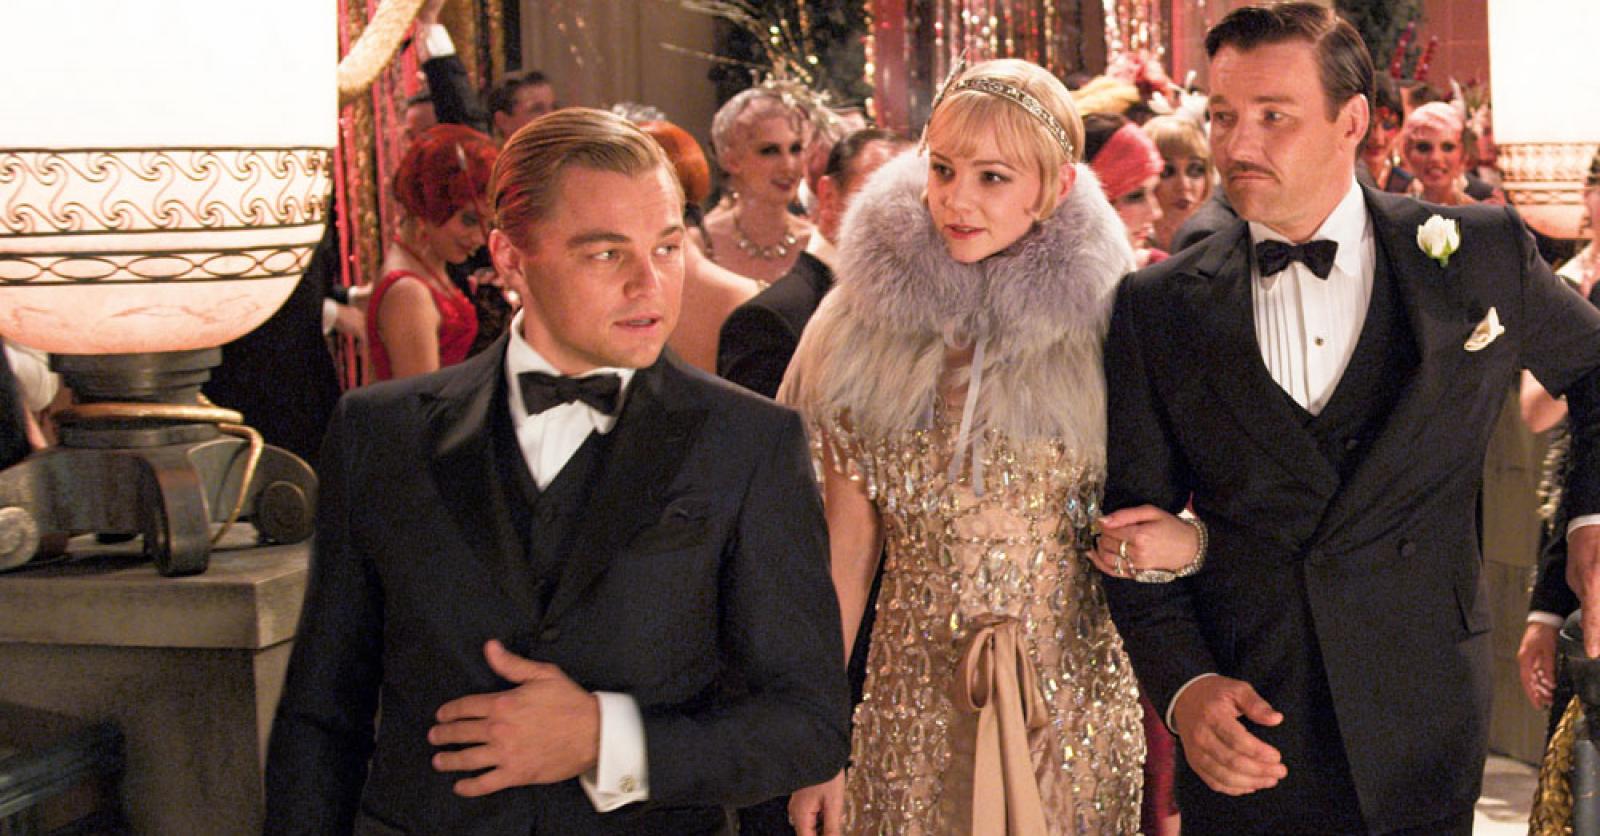 Comment s'habiller pour une Soirée Gatsby ?